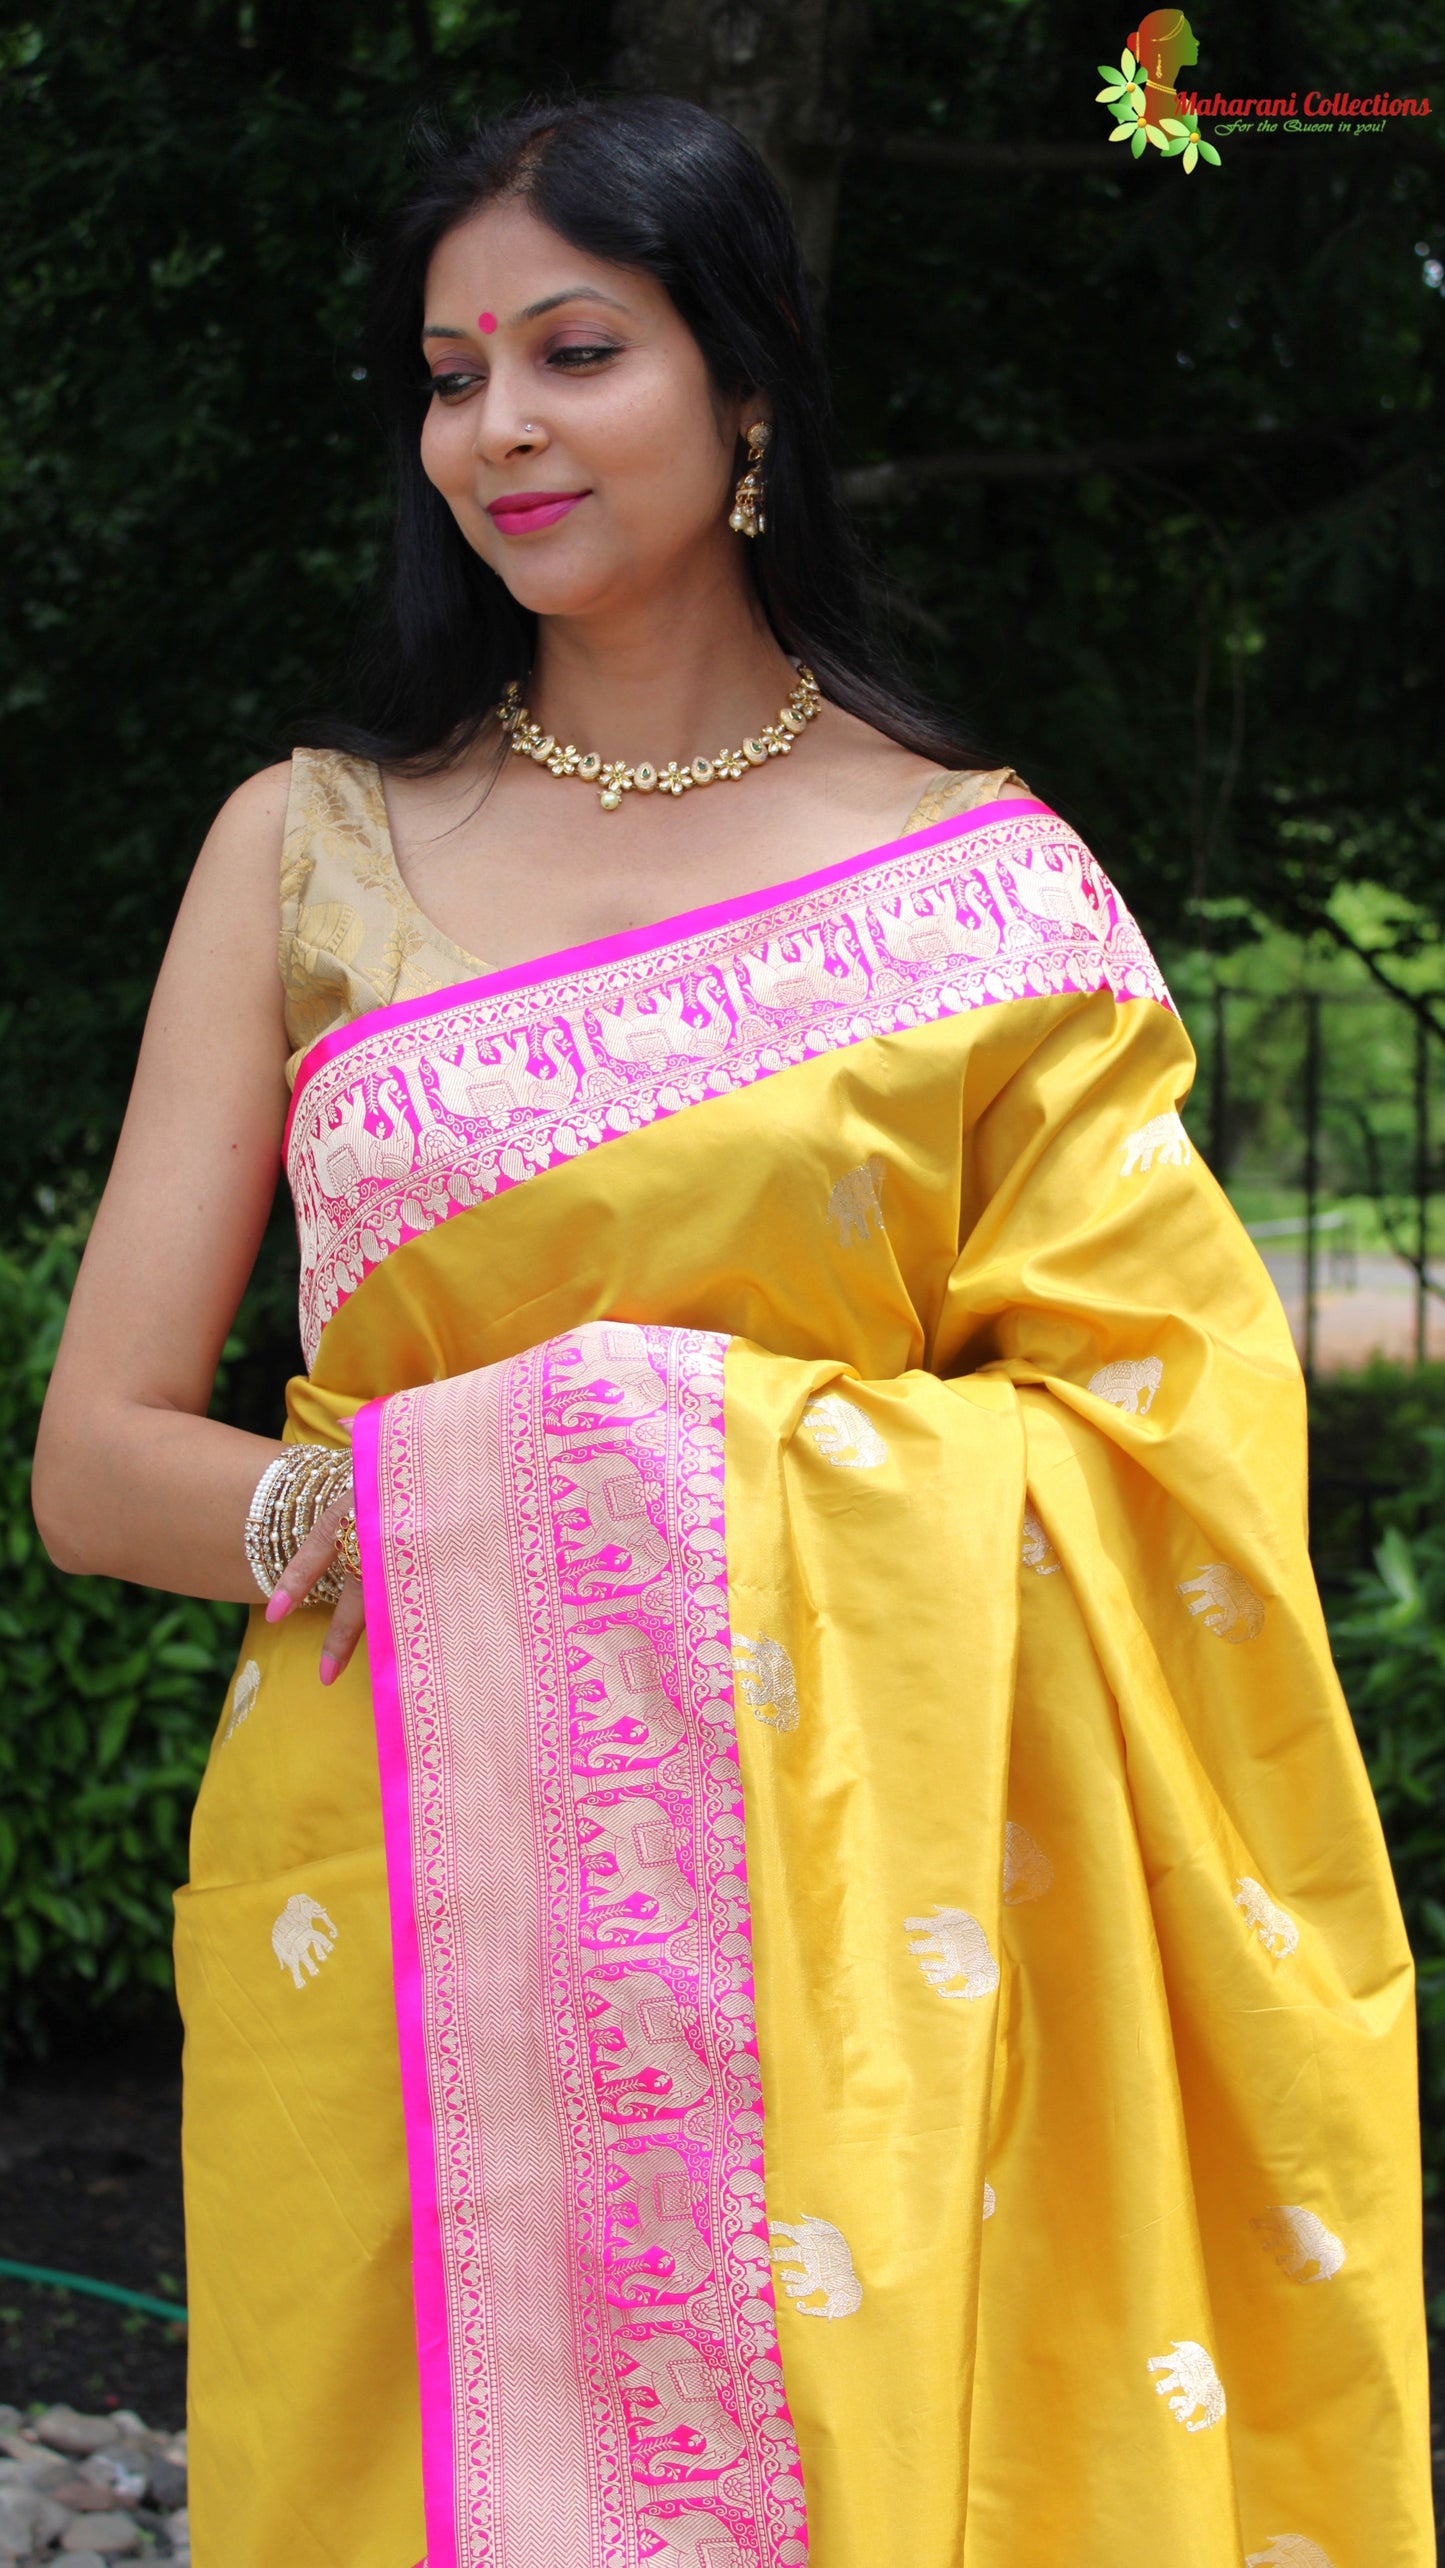 Maharani's Pure Heavy Zari Banarasi Silk Saree - Yellow & Pink (with Stitched Blouse and Petticoat)